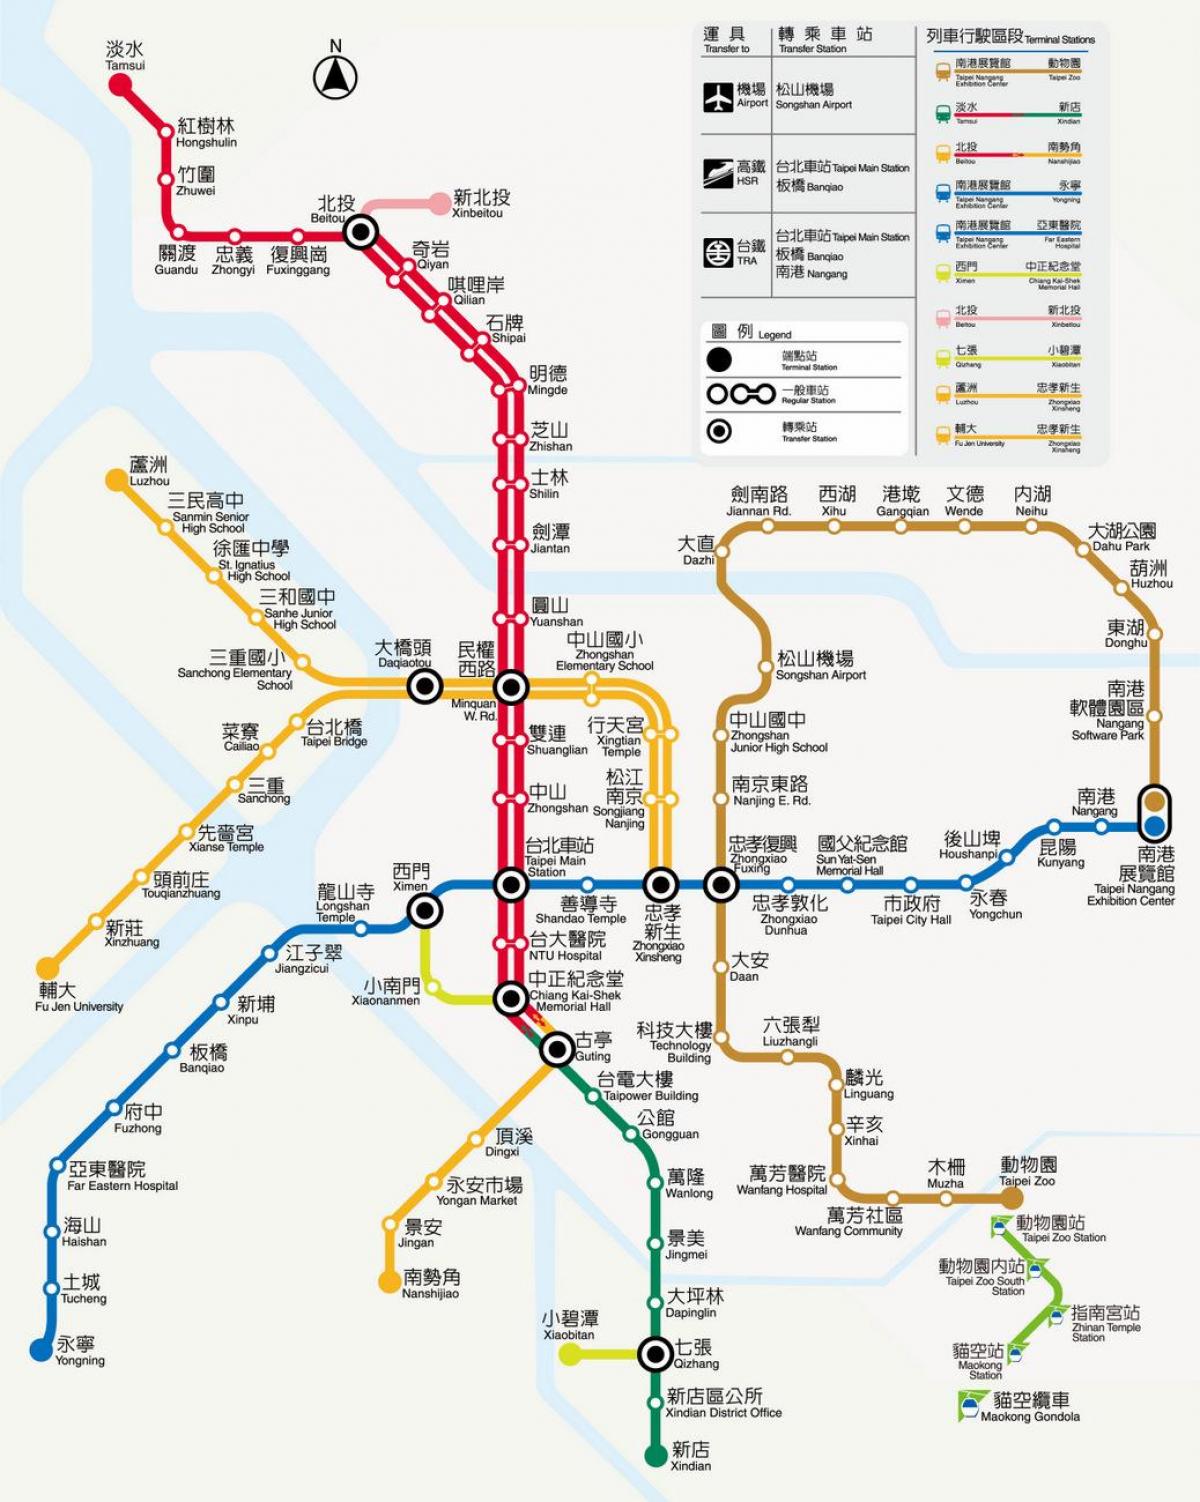 Giá vé tàu điện ngầm Đài Bắc: Giá vé tàu điện ngầm Đài Bắc cực kỳ hợp lý và phải chăng, chỉ từ 20 đến 65 đài tệ tùy vào khoảng cách và số lần chuyển tuyến. Bạn có thể mua vé trực tiếp tại ga hoặc sử dụng thẻ điện tử EasyCard để tiện lợi hơn.